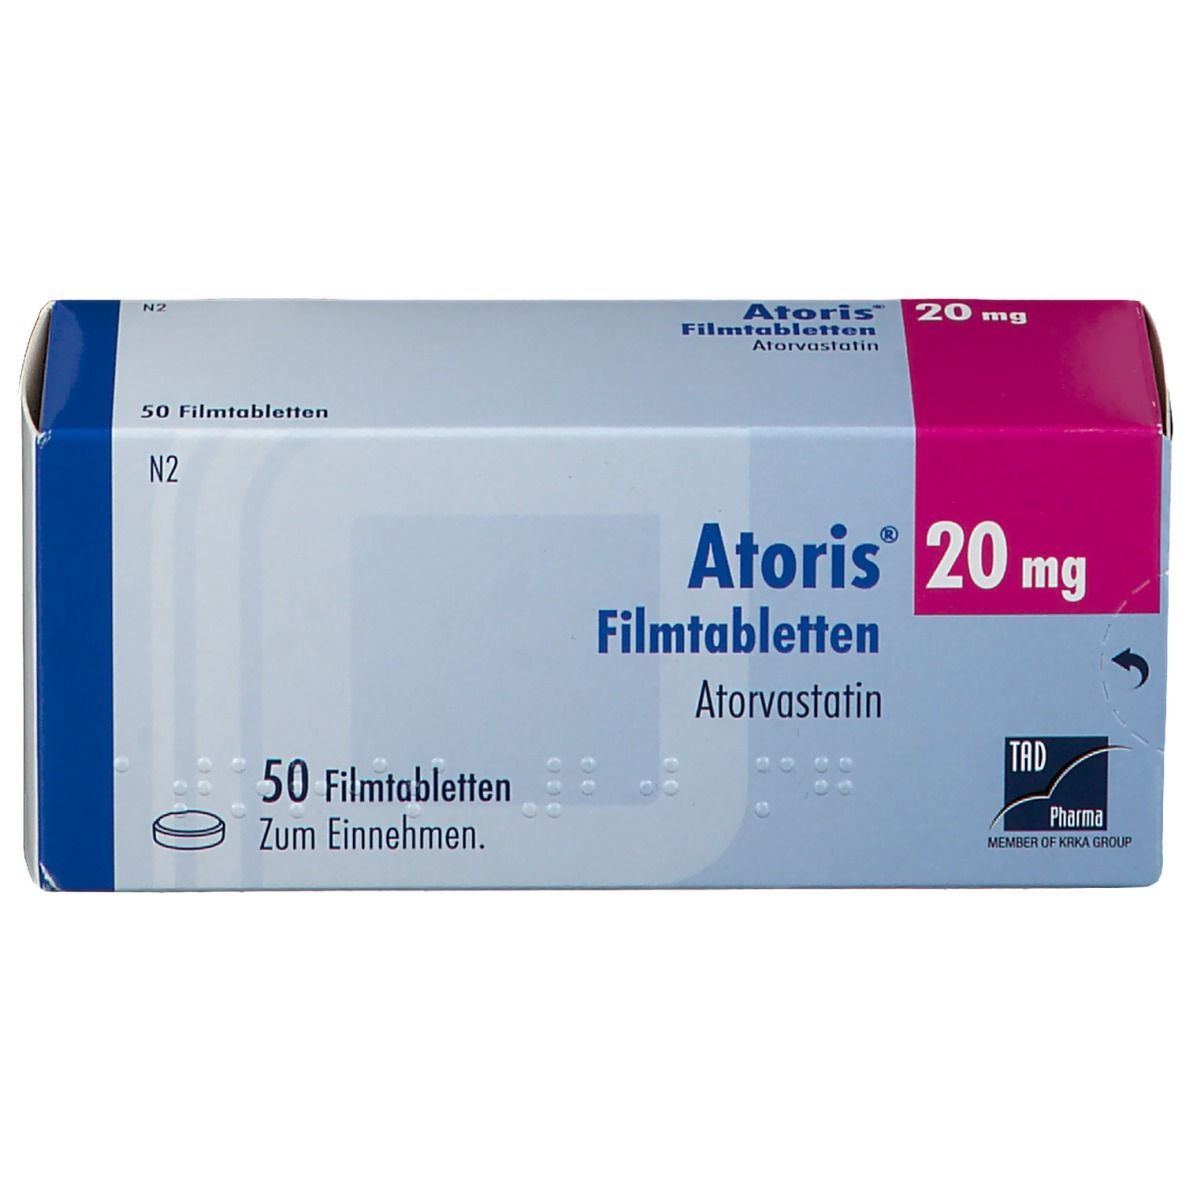 Atoris® 20 mg